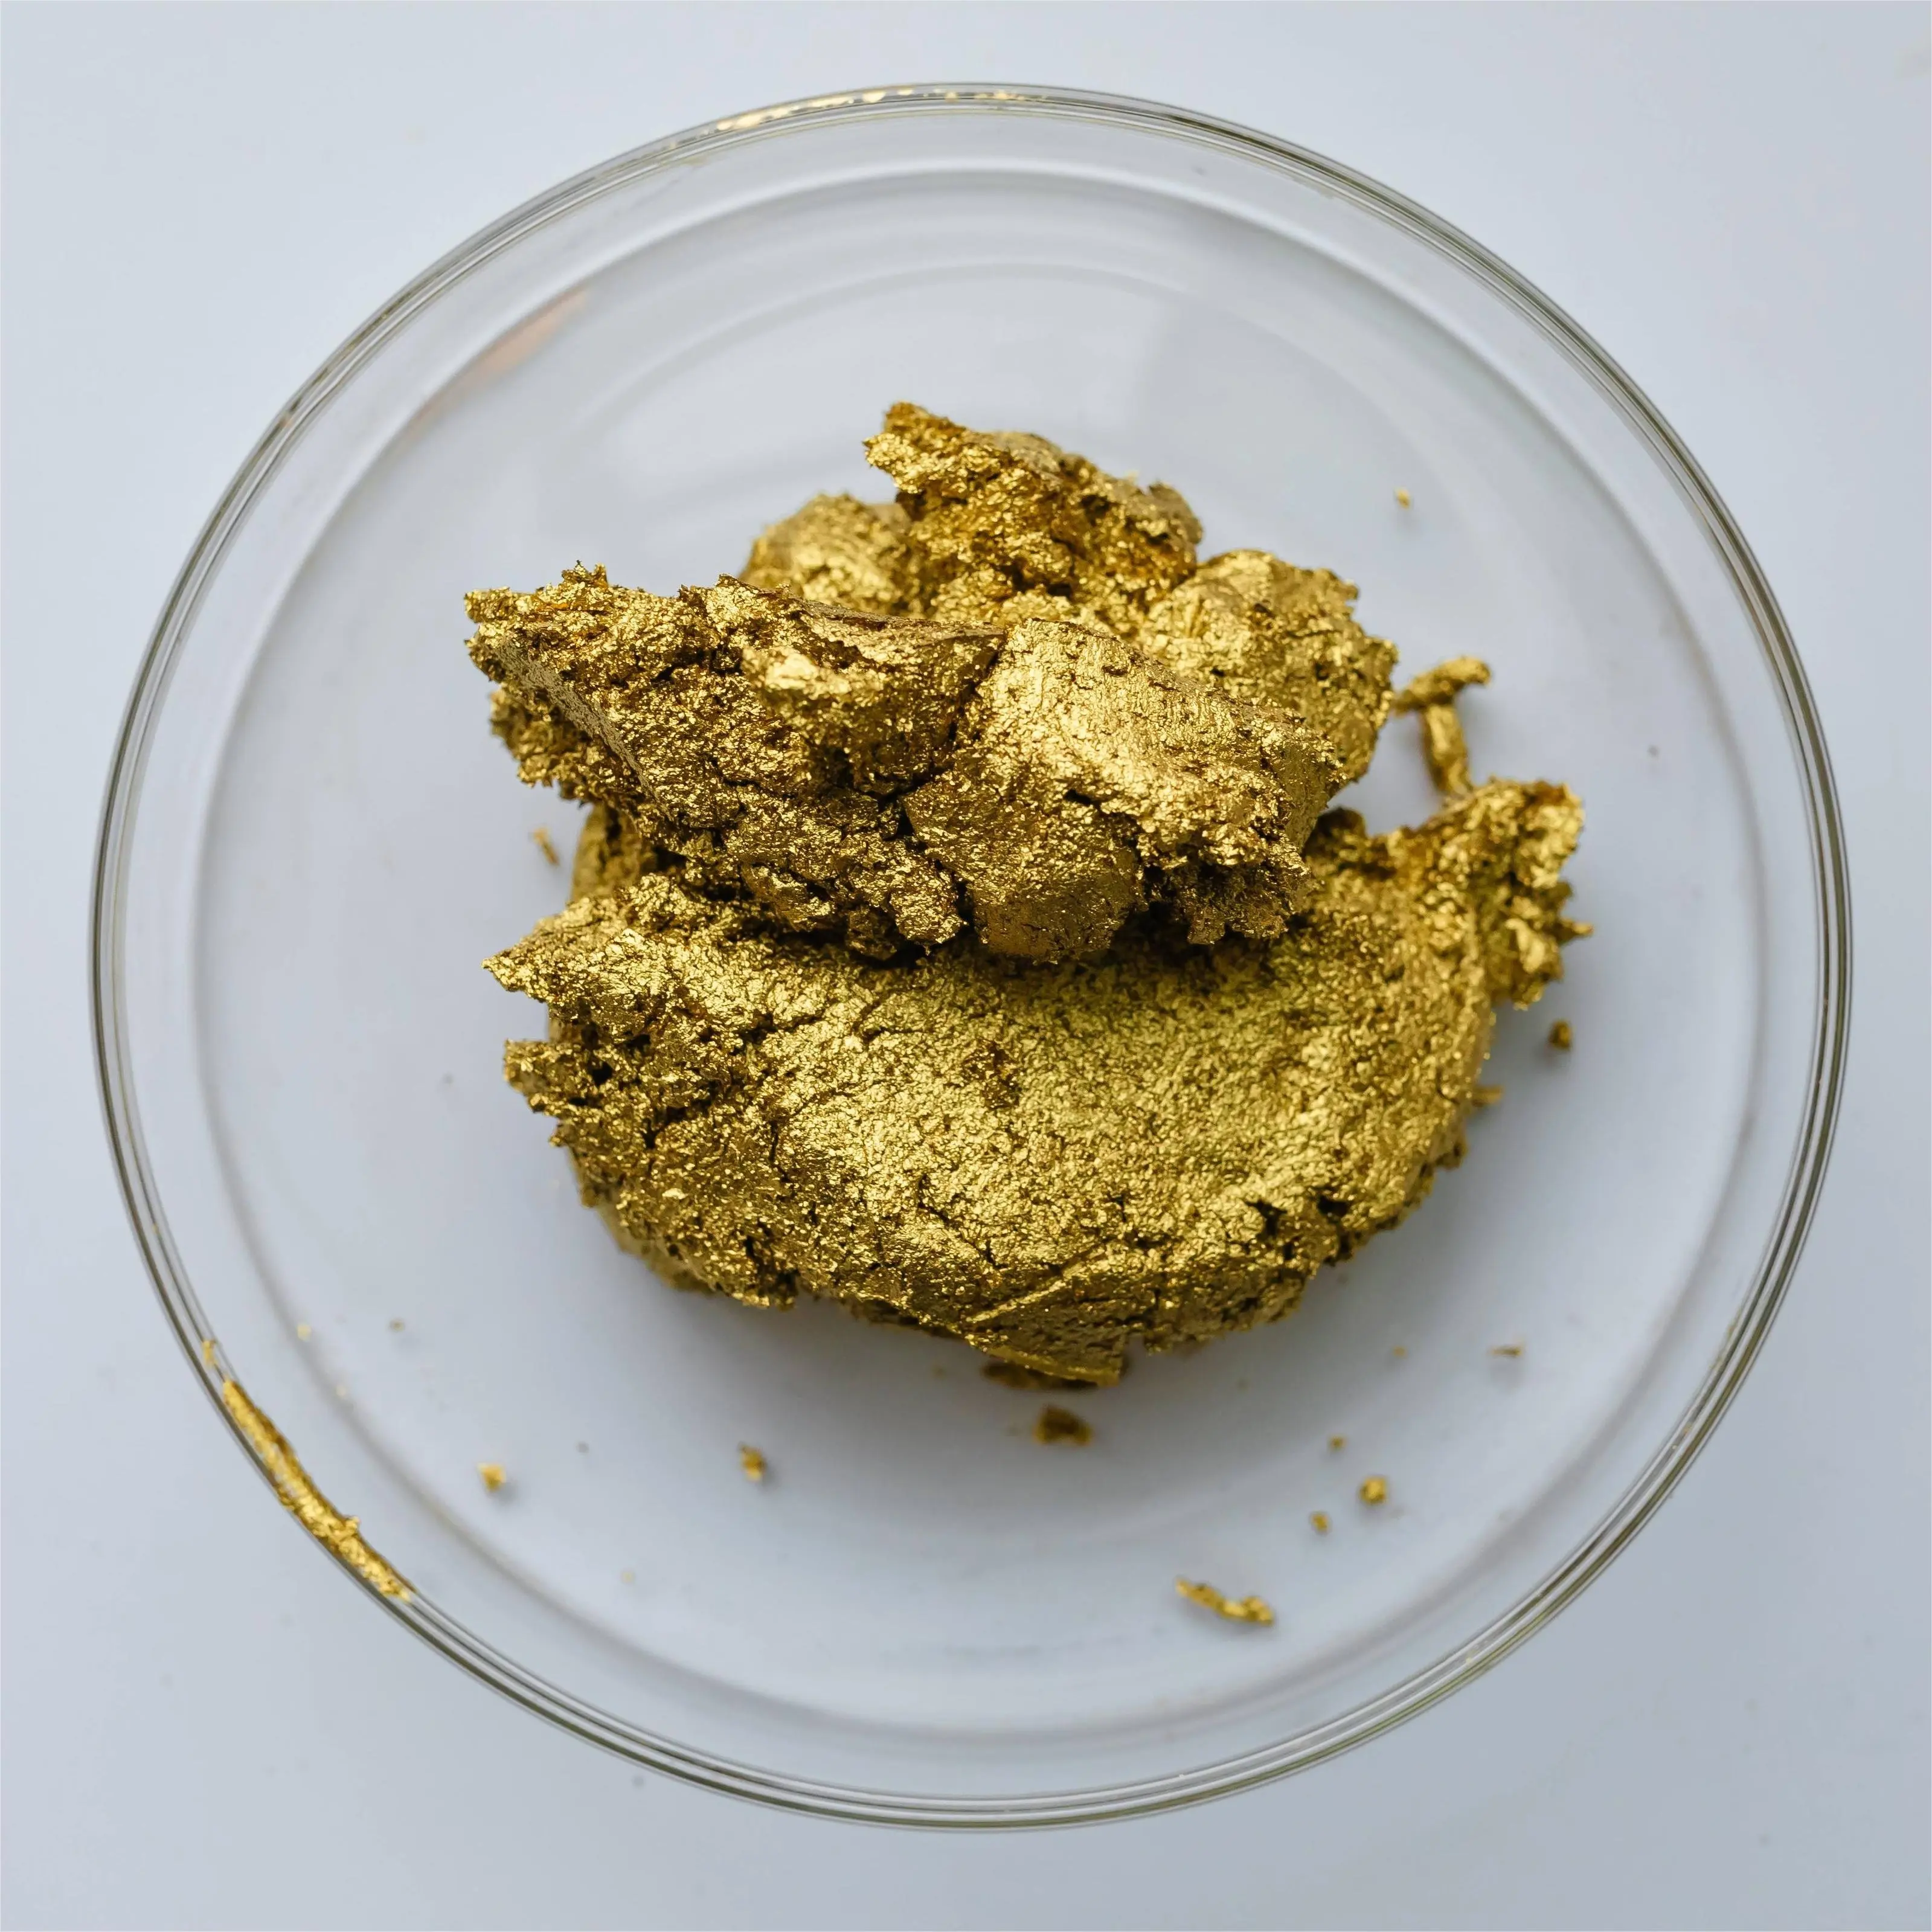 יהלום זהב PRPG303 עשיר זהב חיוור פסיבציה על בסיס מים משחת נחושת ברונזה לציפויים על בסיס מים דיו תרסיס צבעים